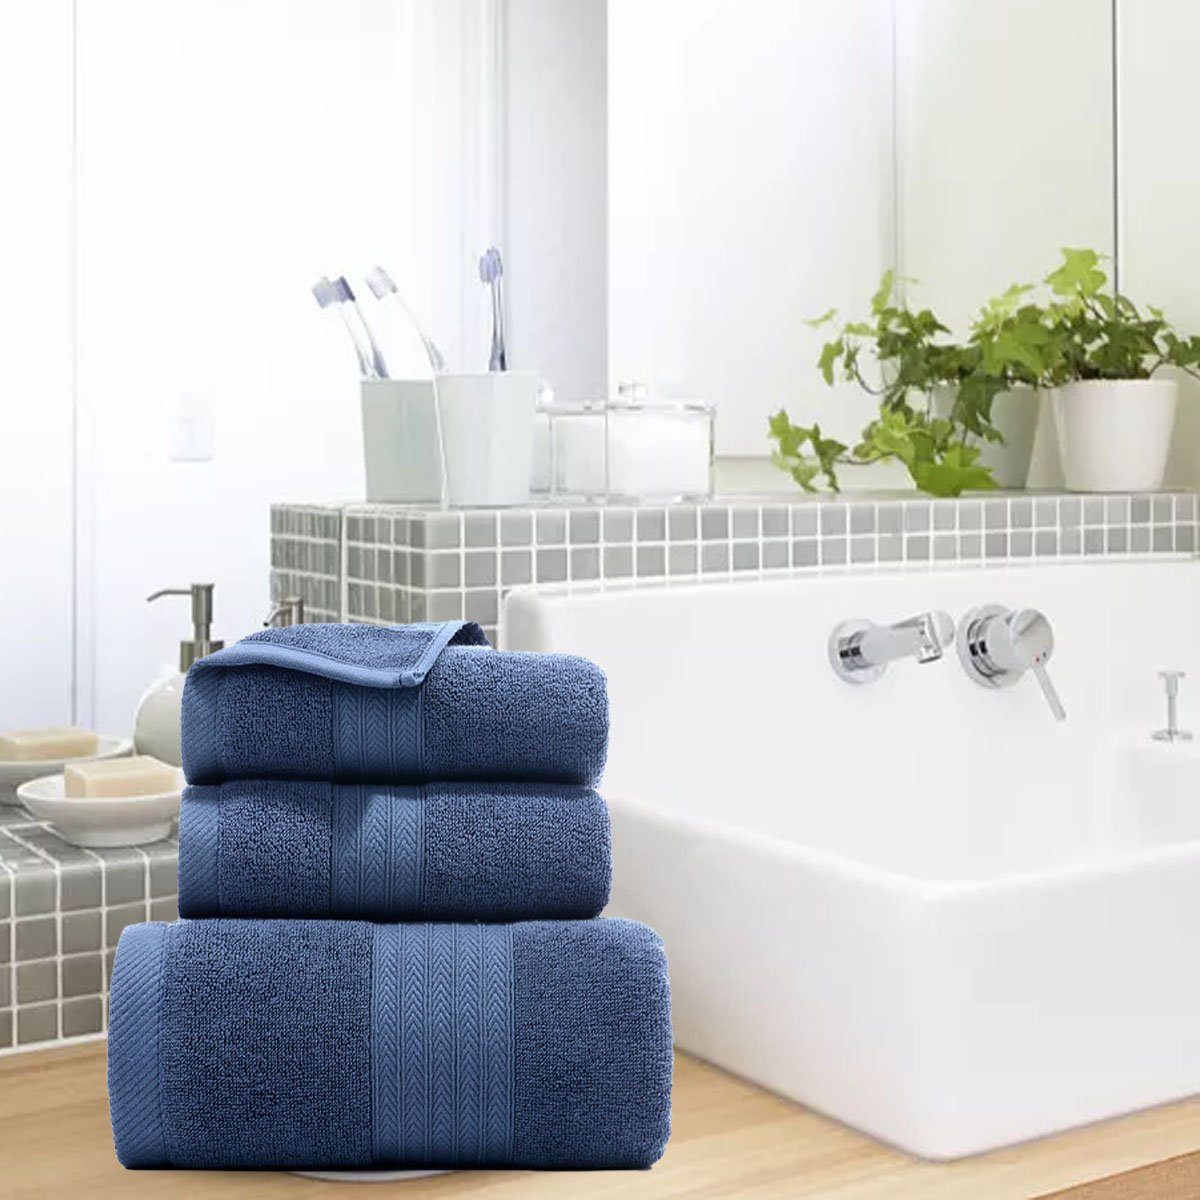 weich,für Hause Set zu Handtücher und Jormftte Handtuch Blau Set-2xHandtuch,1xBadetuch,saugfähig